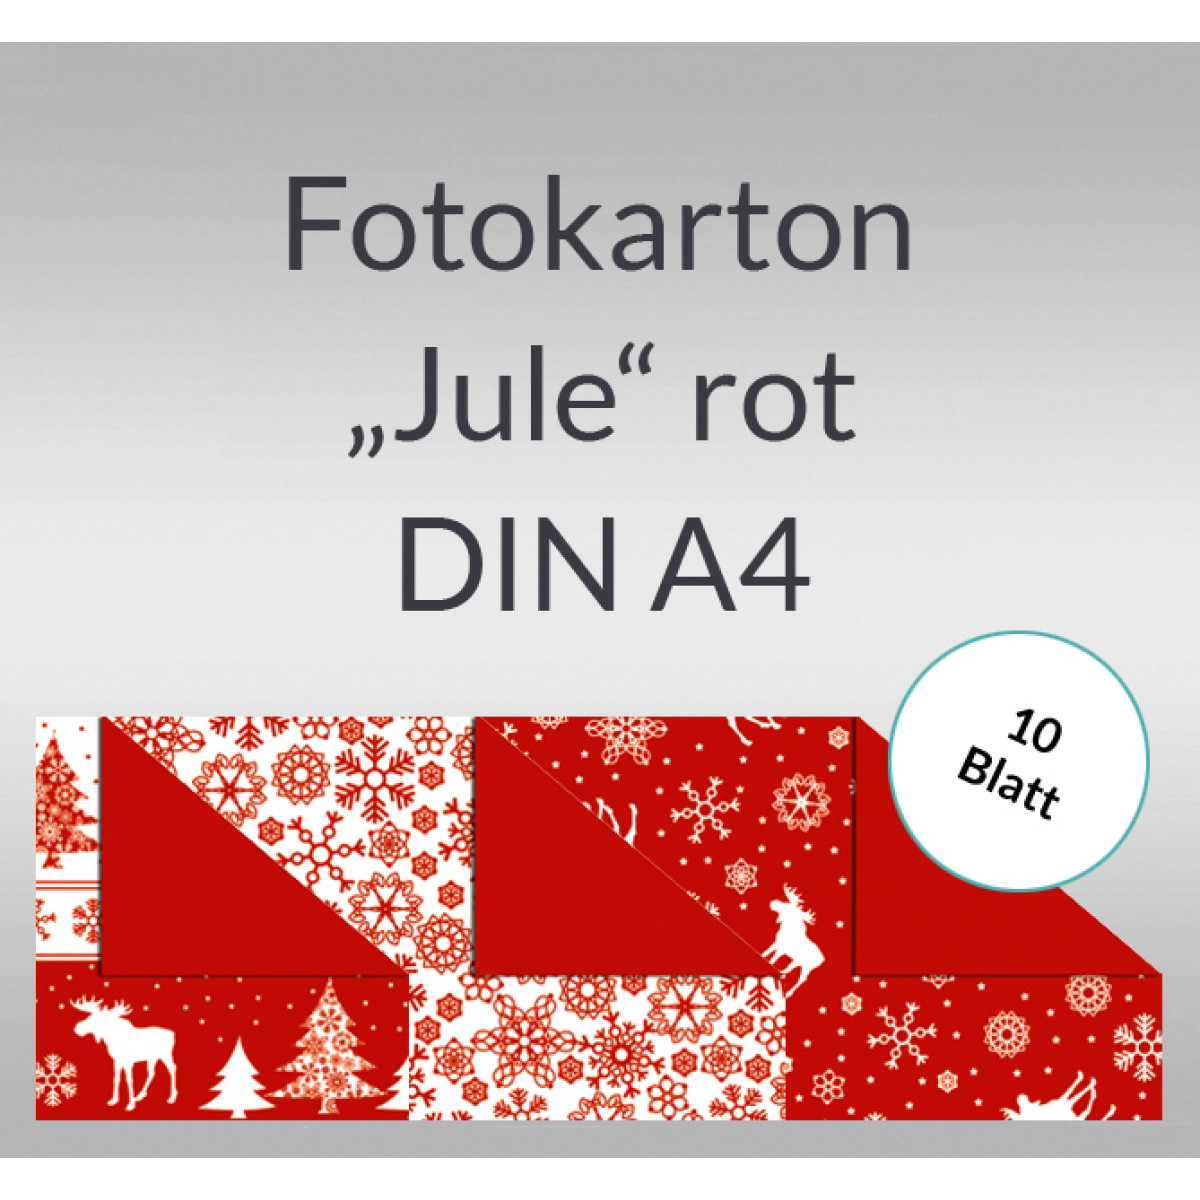 Fotokarton "Jule" rot DIN A4 - 10 Blatt